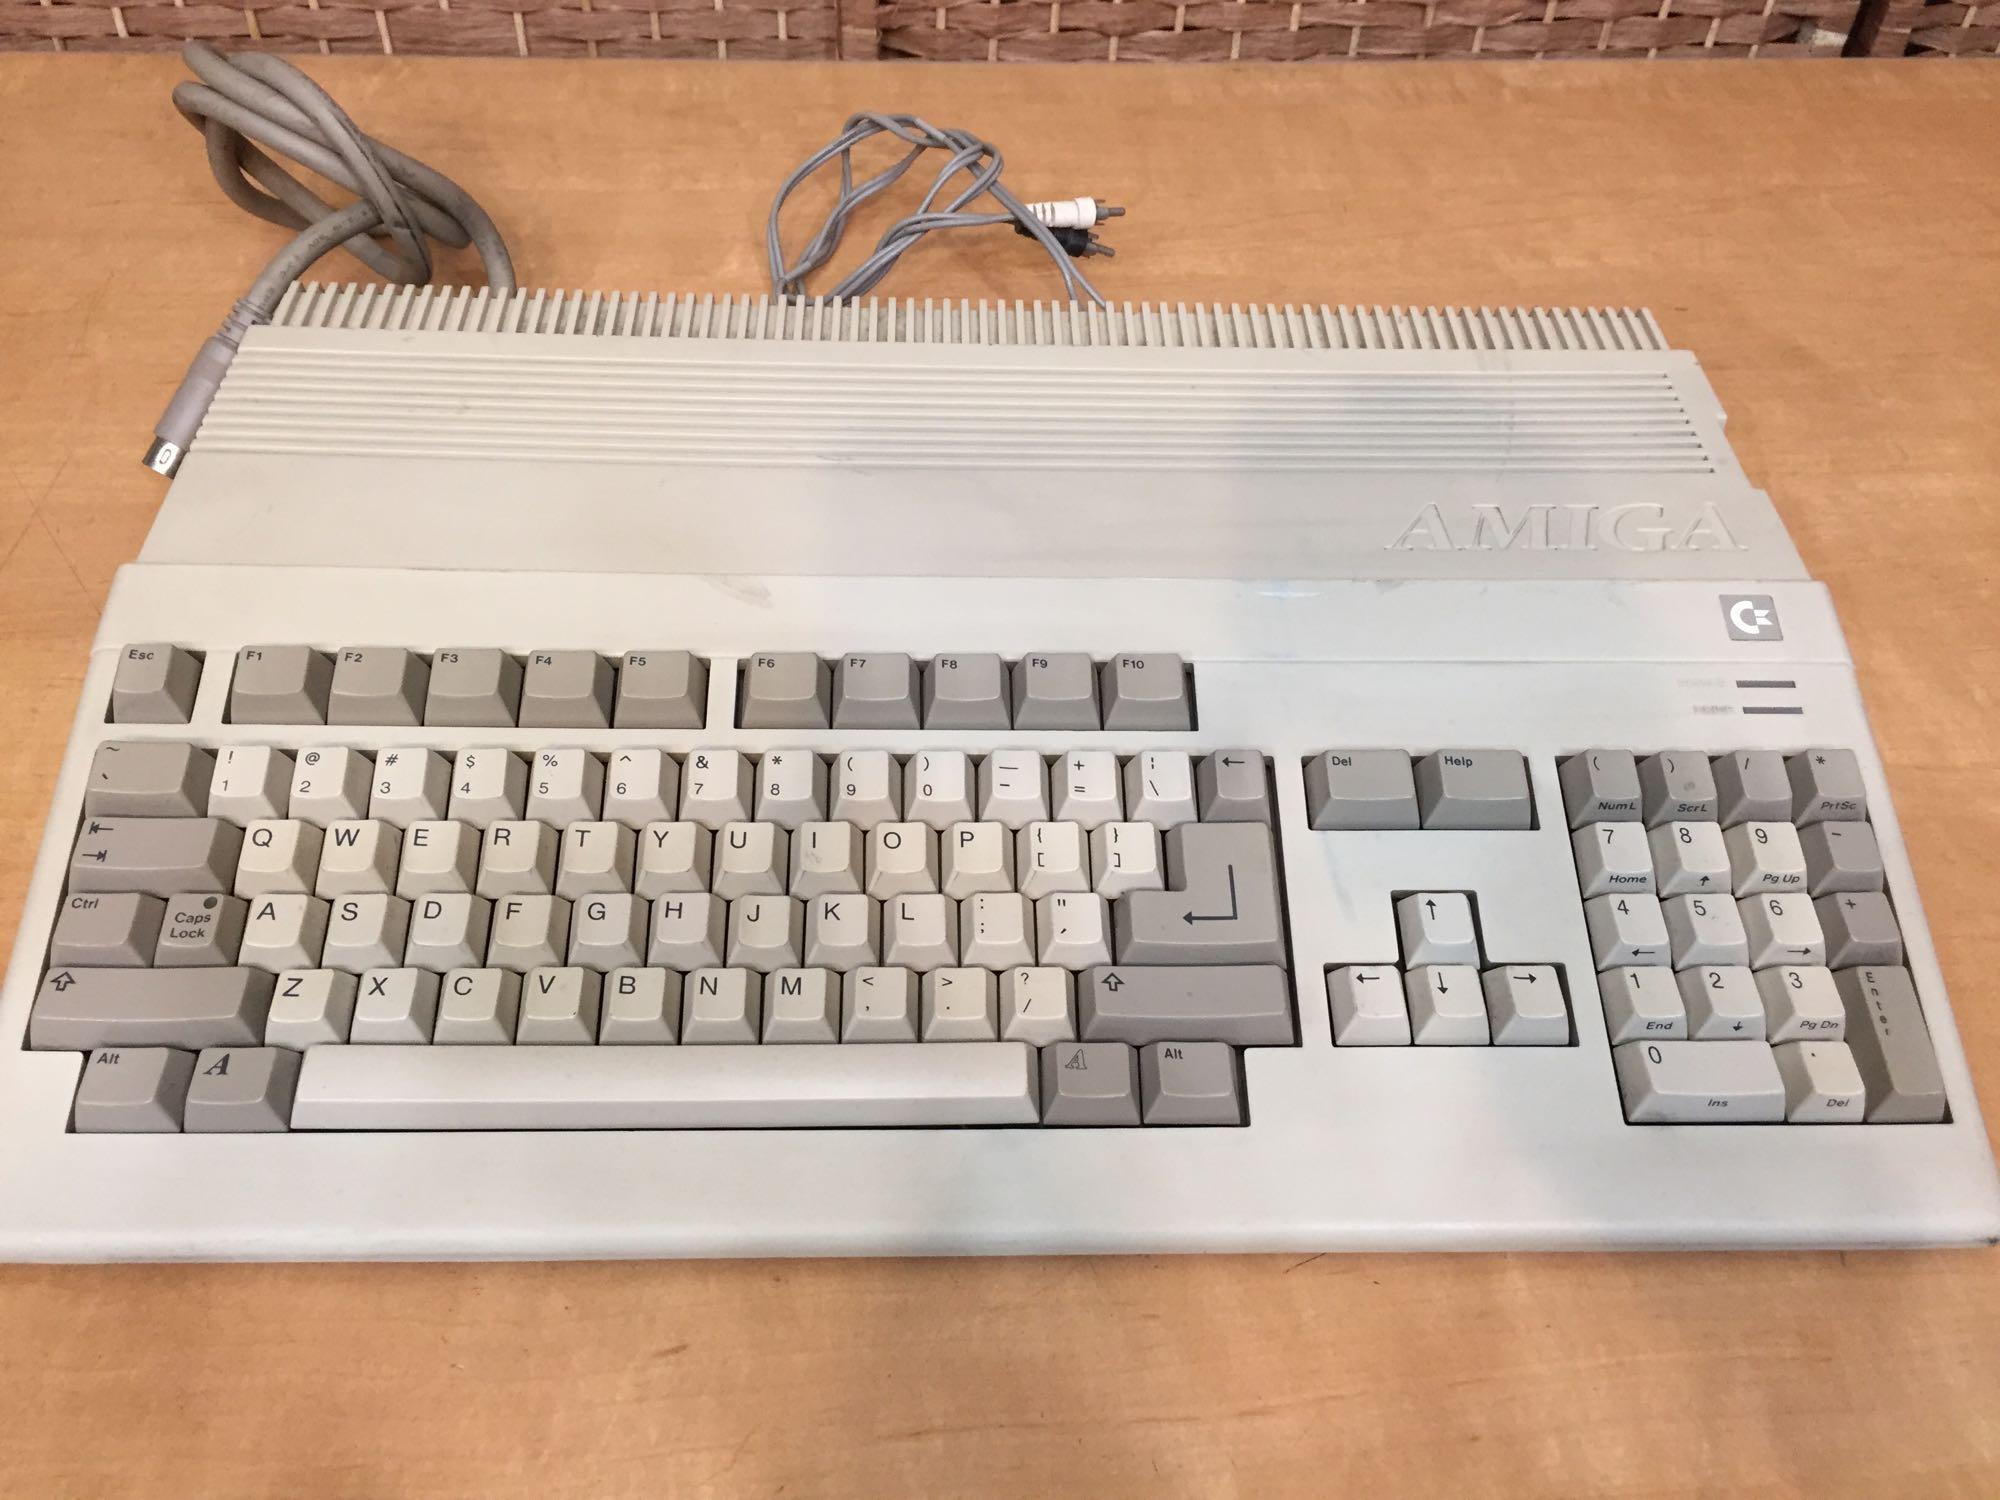 Commodore Amiga 500 / A500 Computer